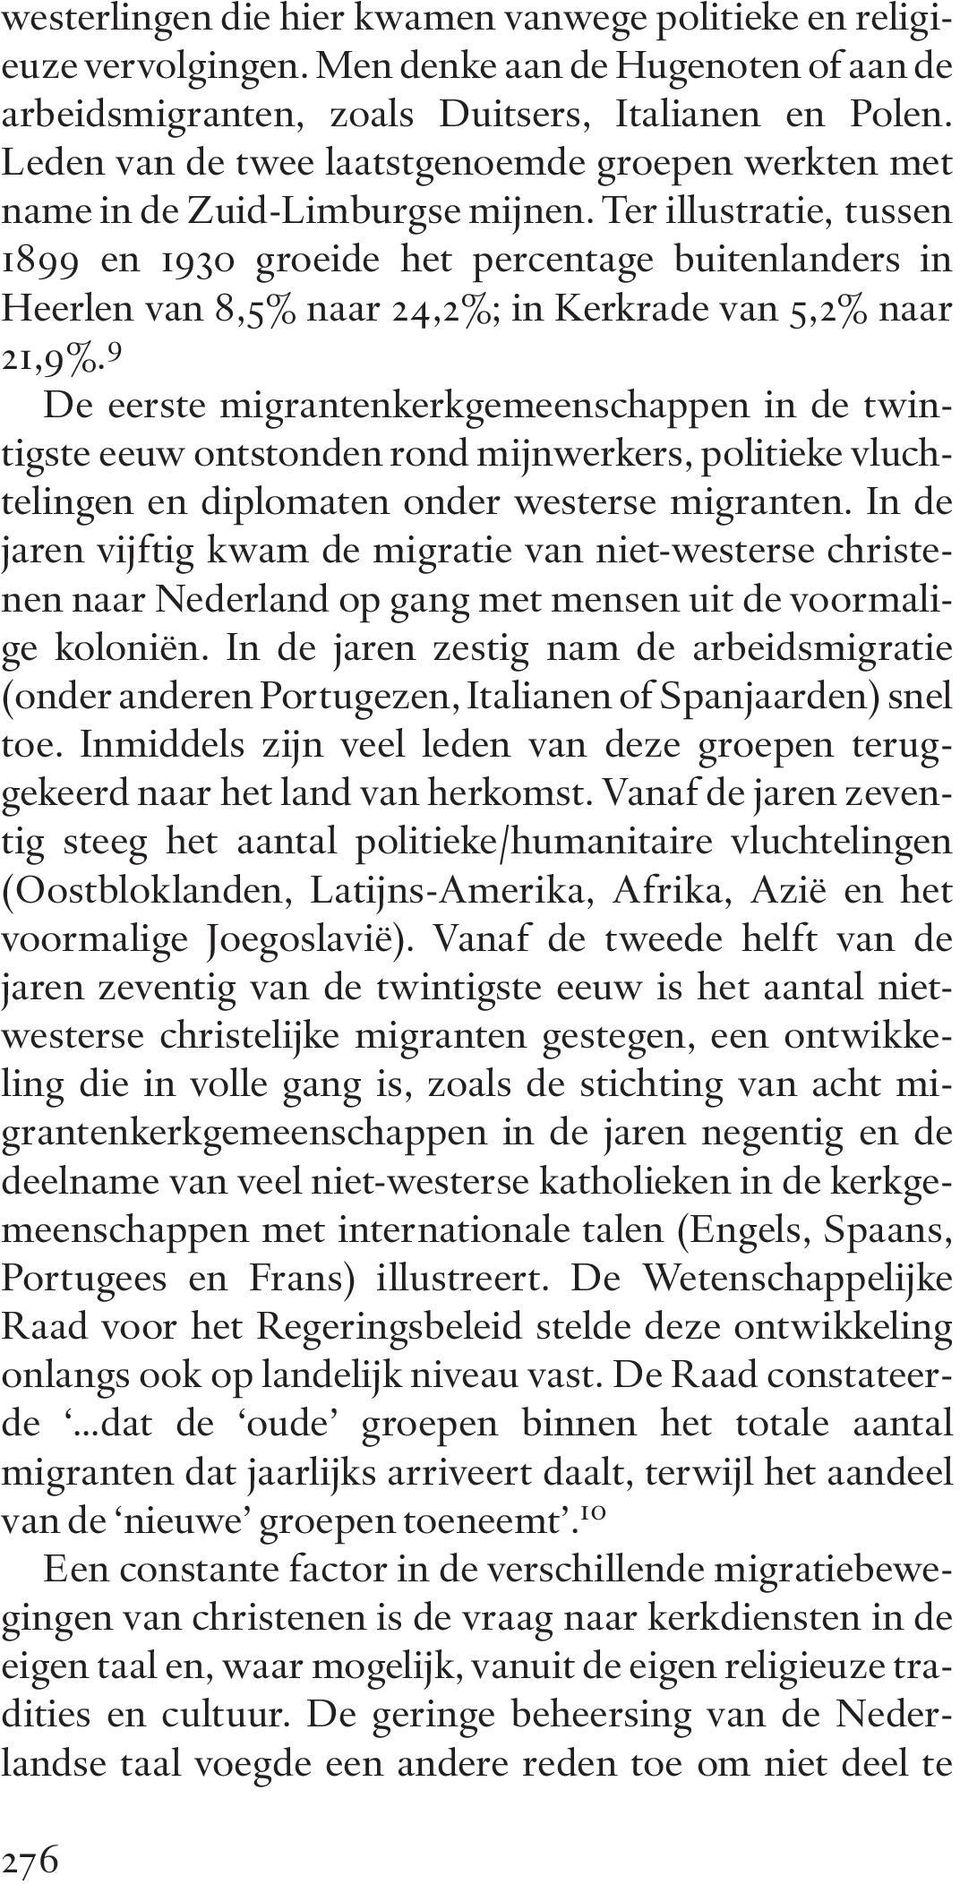 Ter illustratie, tussen 1899 en 1930 groeide het percentage buitenlanders in Heerlen van 8,5% naar 24,2%; in Kerkrade van 5,2% naar 21,9%.